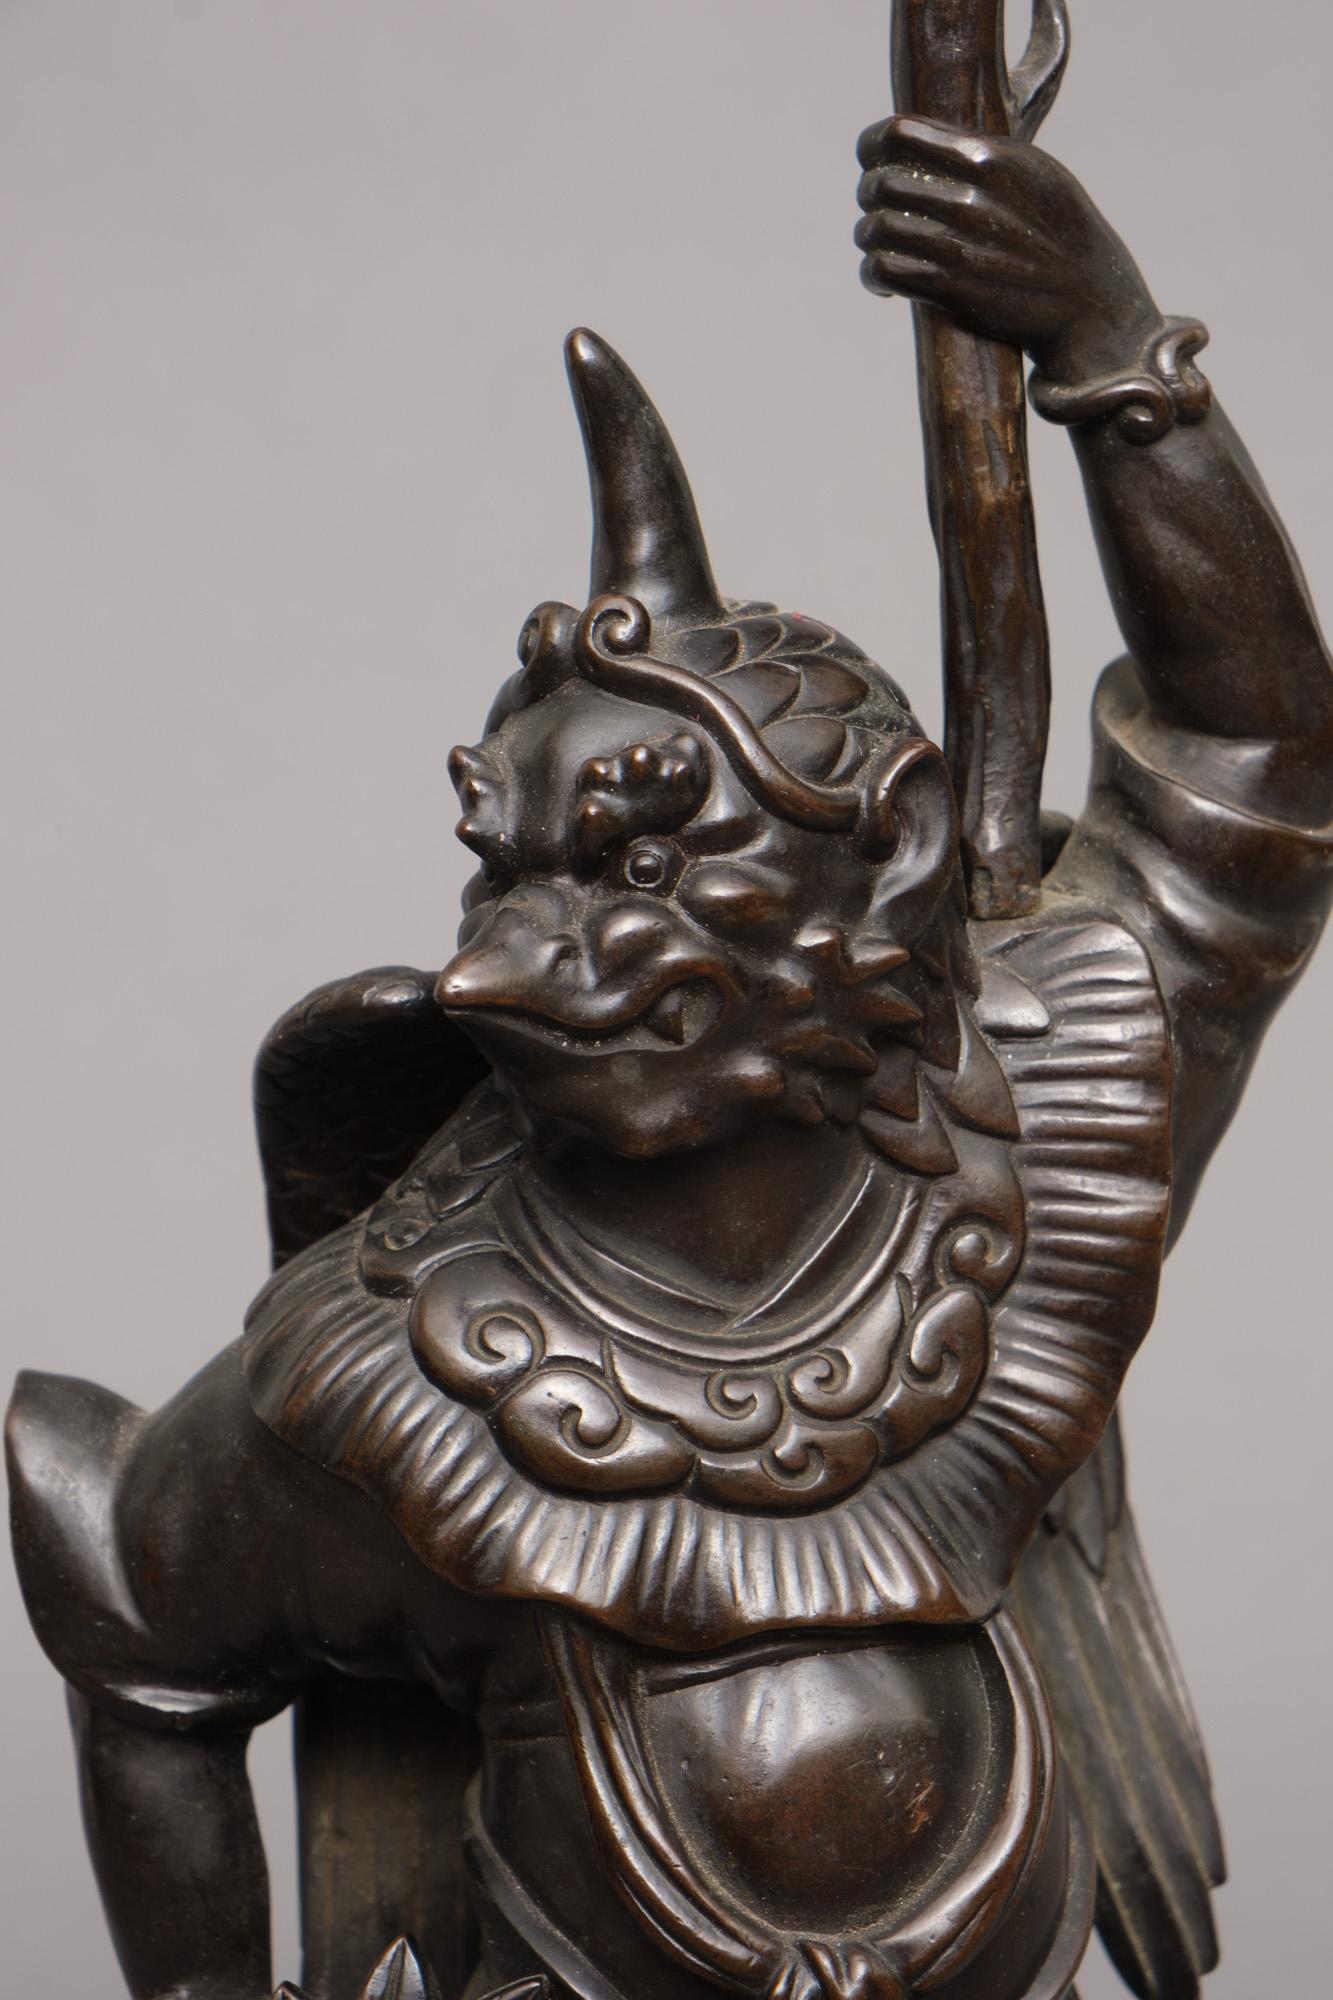 Sehr raffinierter japanischer Bronze-Okimono eines 'karasu tengu', der einen Kerzenleuchter hält.

Gut gegossen als Tengu in halb menschlicher, halb vogelartiger Gestalt, der auf einem Laubhaufen steht. Er steht auf einem abgerundeten, quadratischen